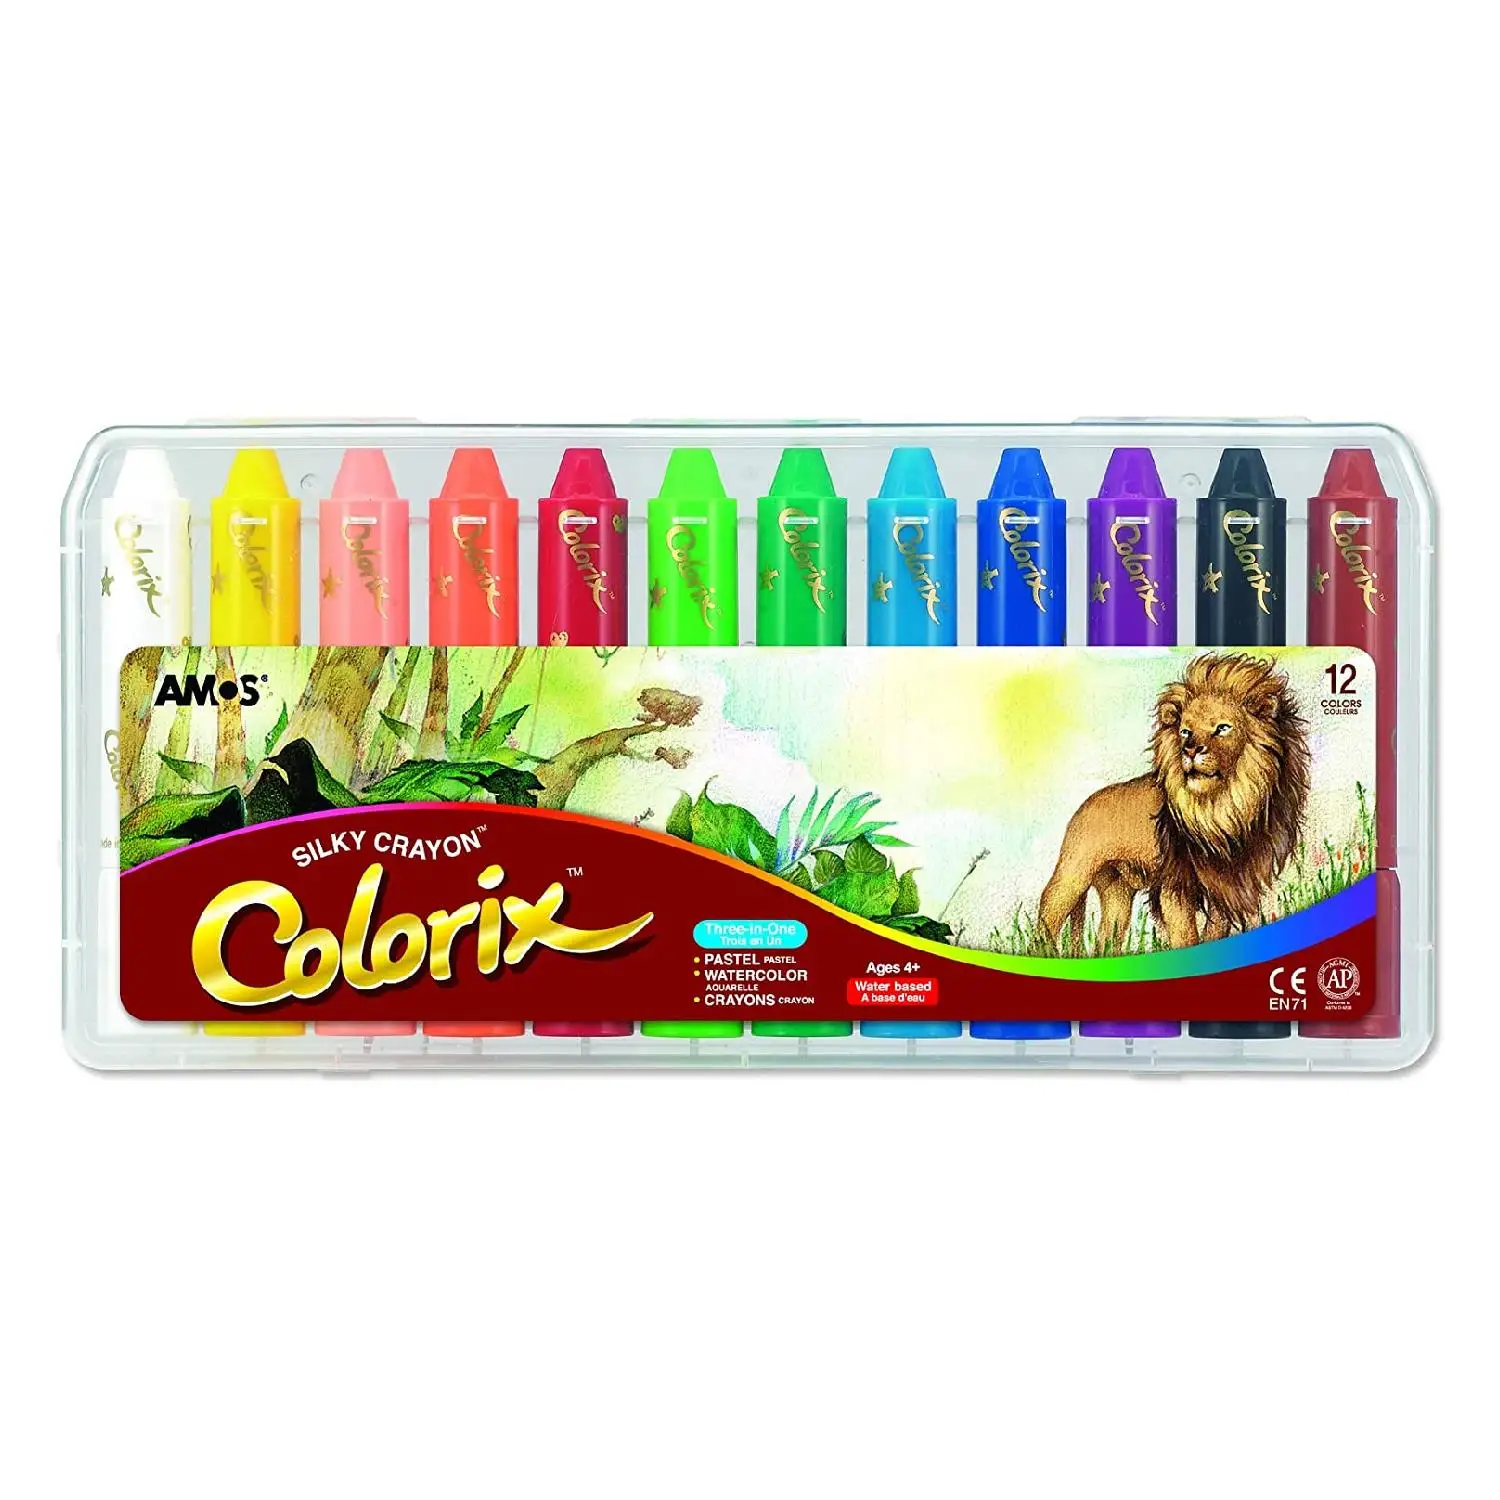 Watercolor Crayons